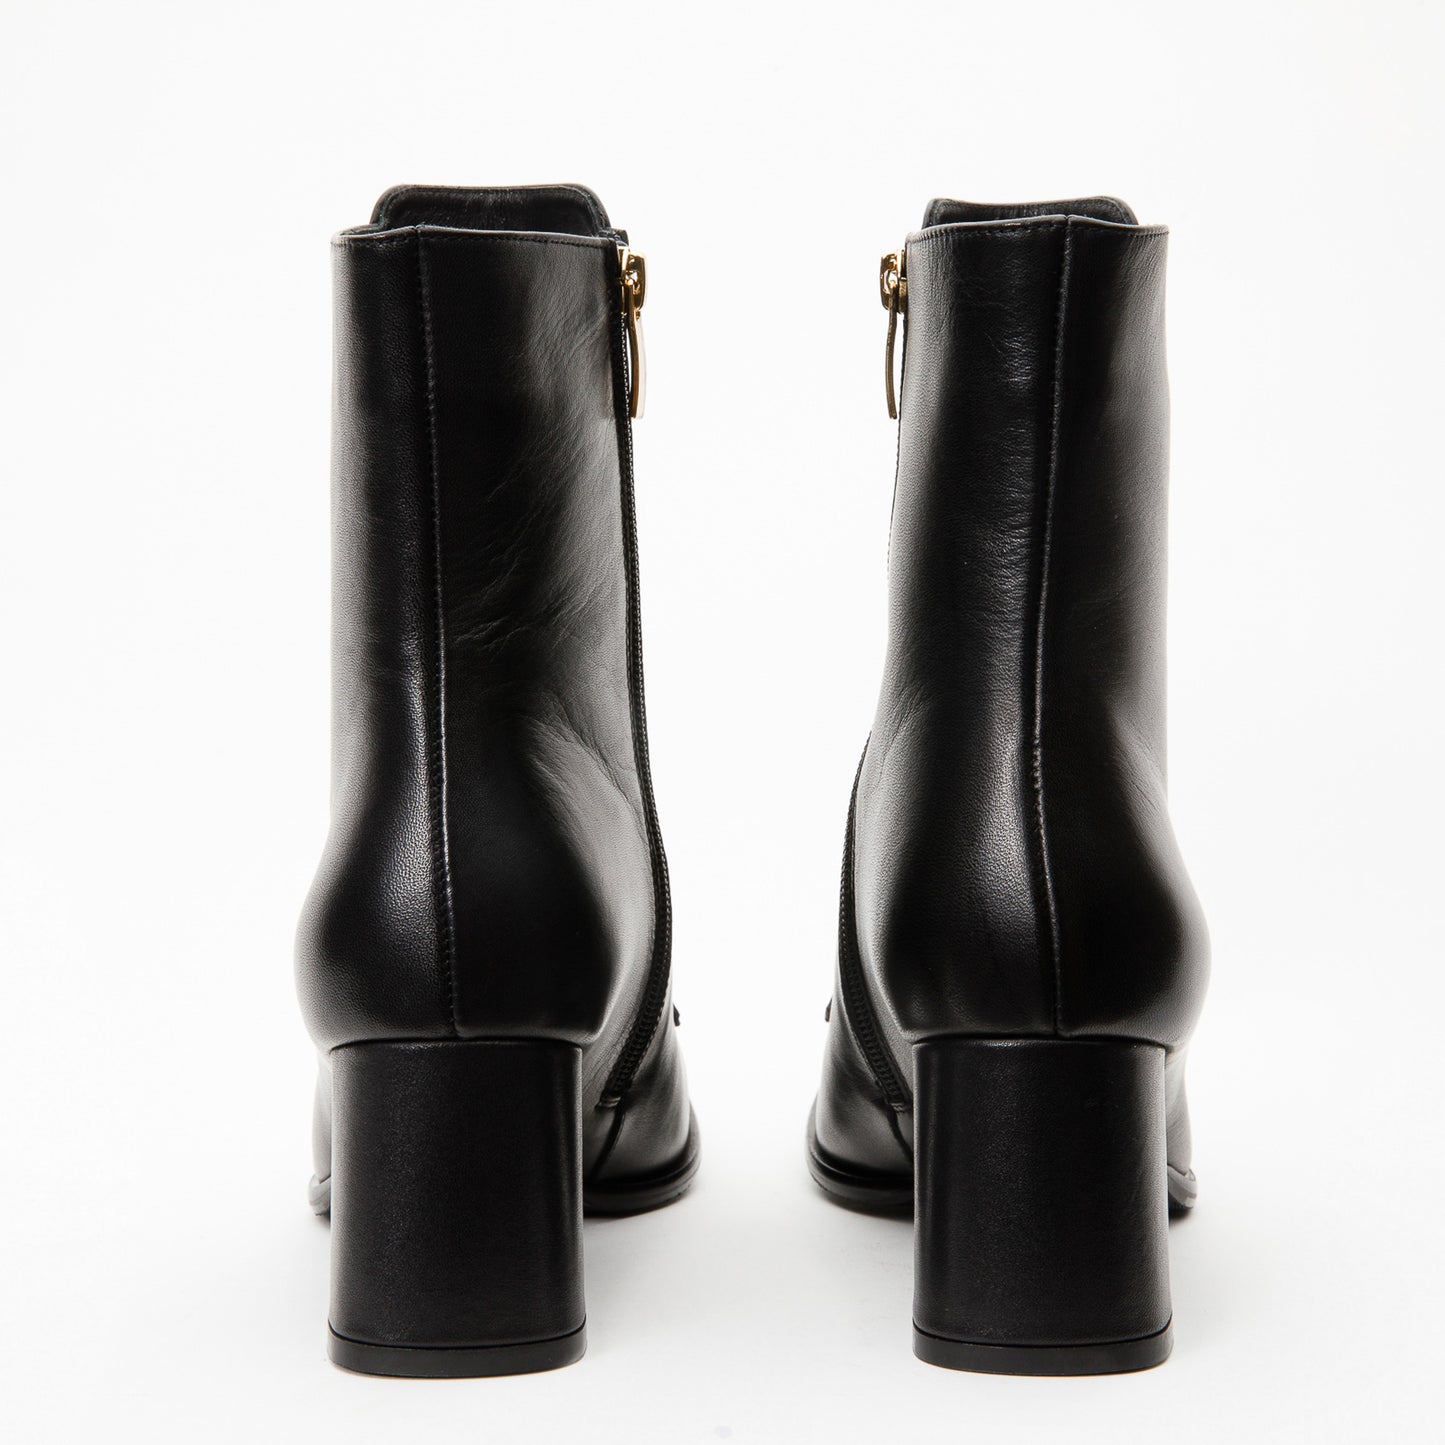 The Bukres Black Leather Block Heel Women Boot